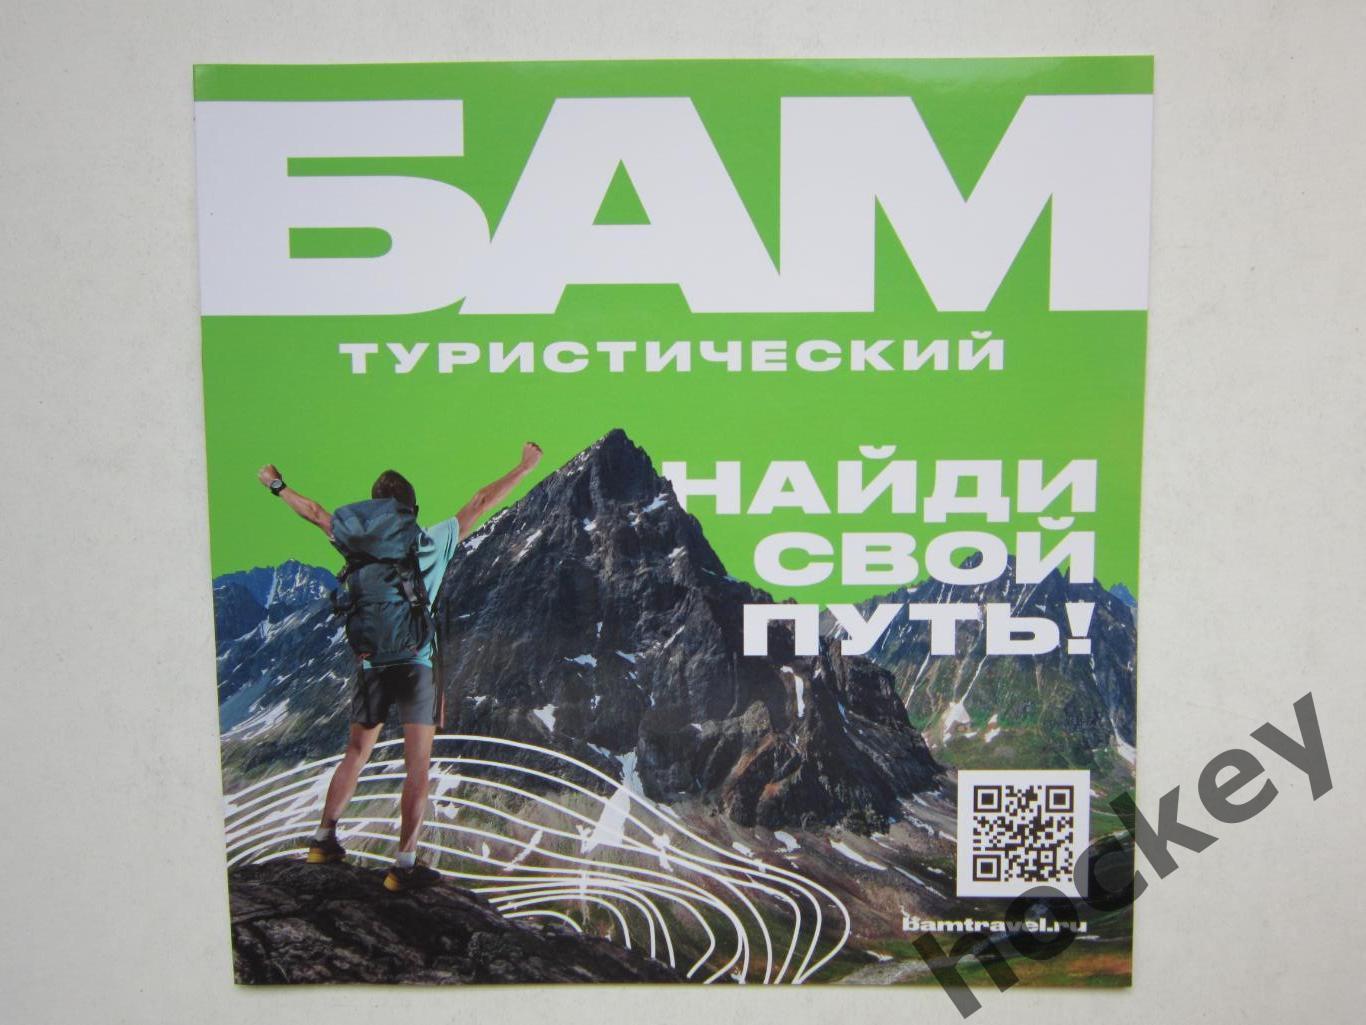 БАМ (Байкало-Амурская магистраль) туристический. Найди свой путь!